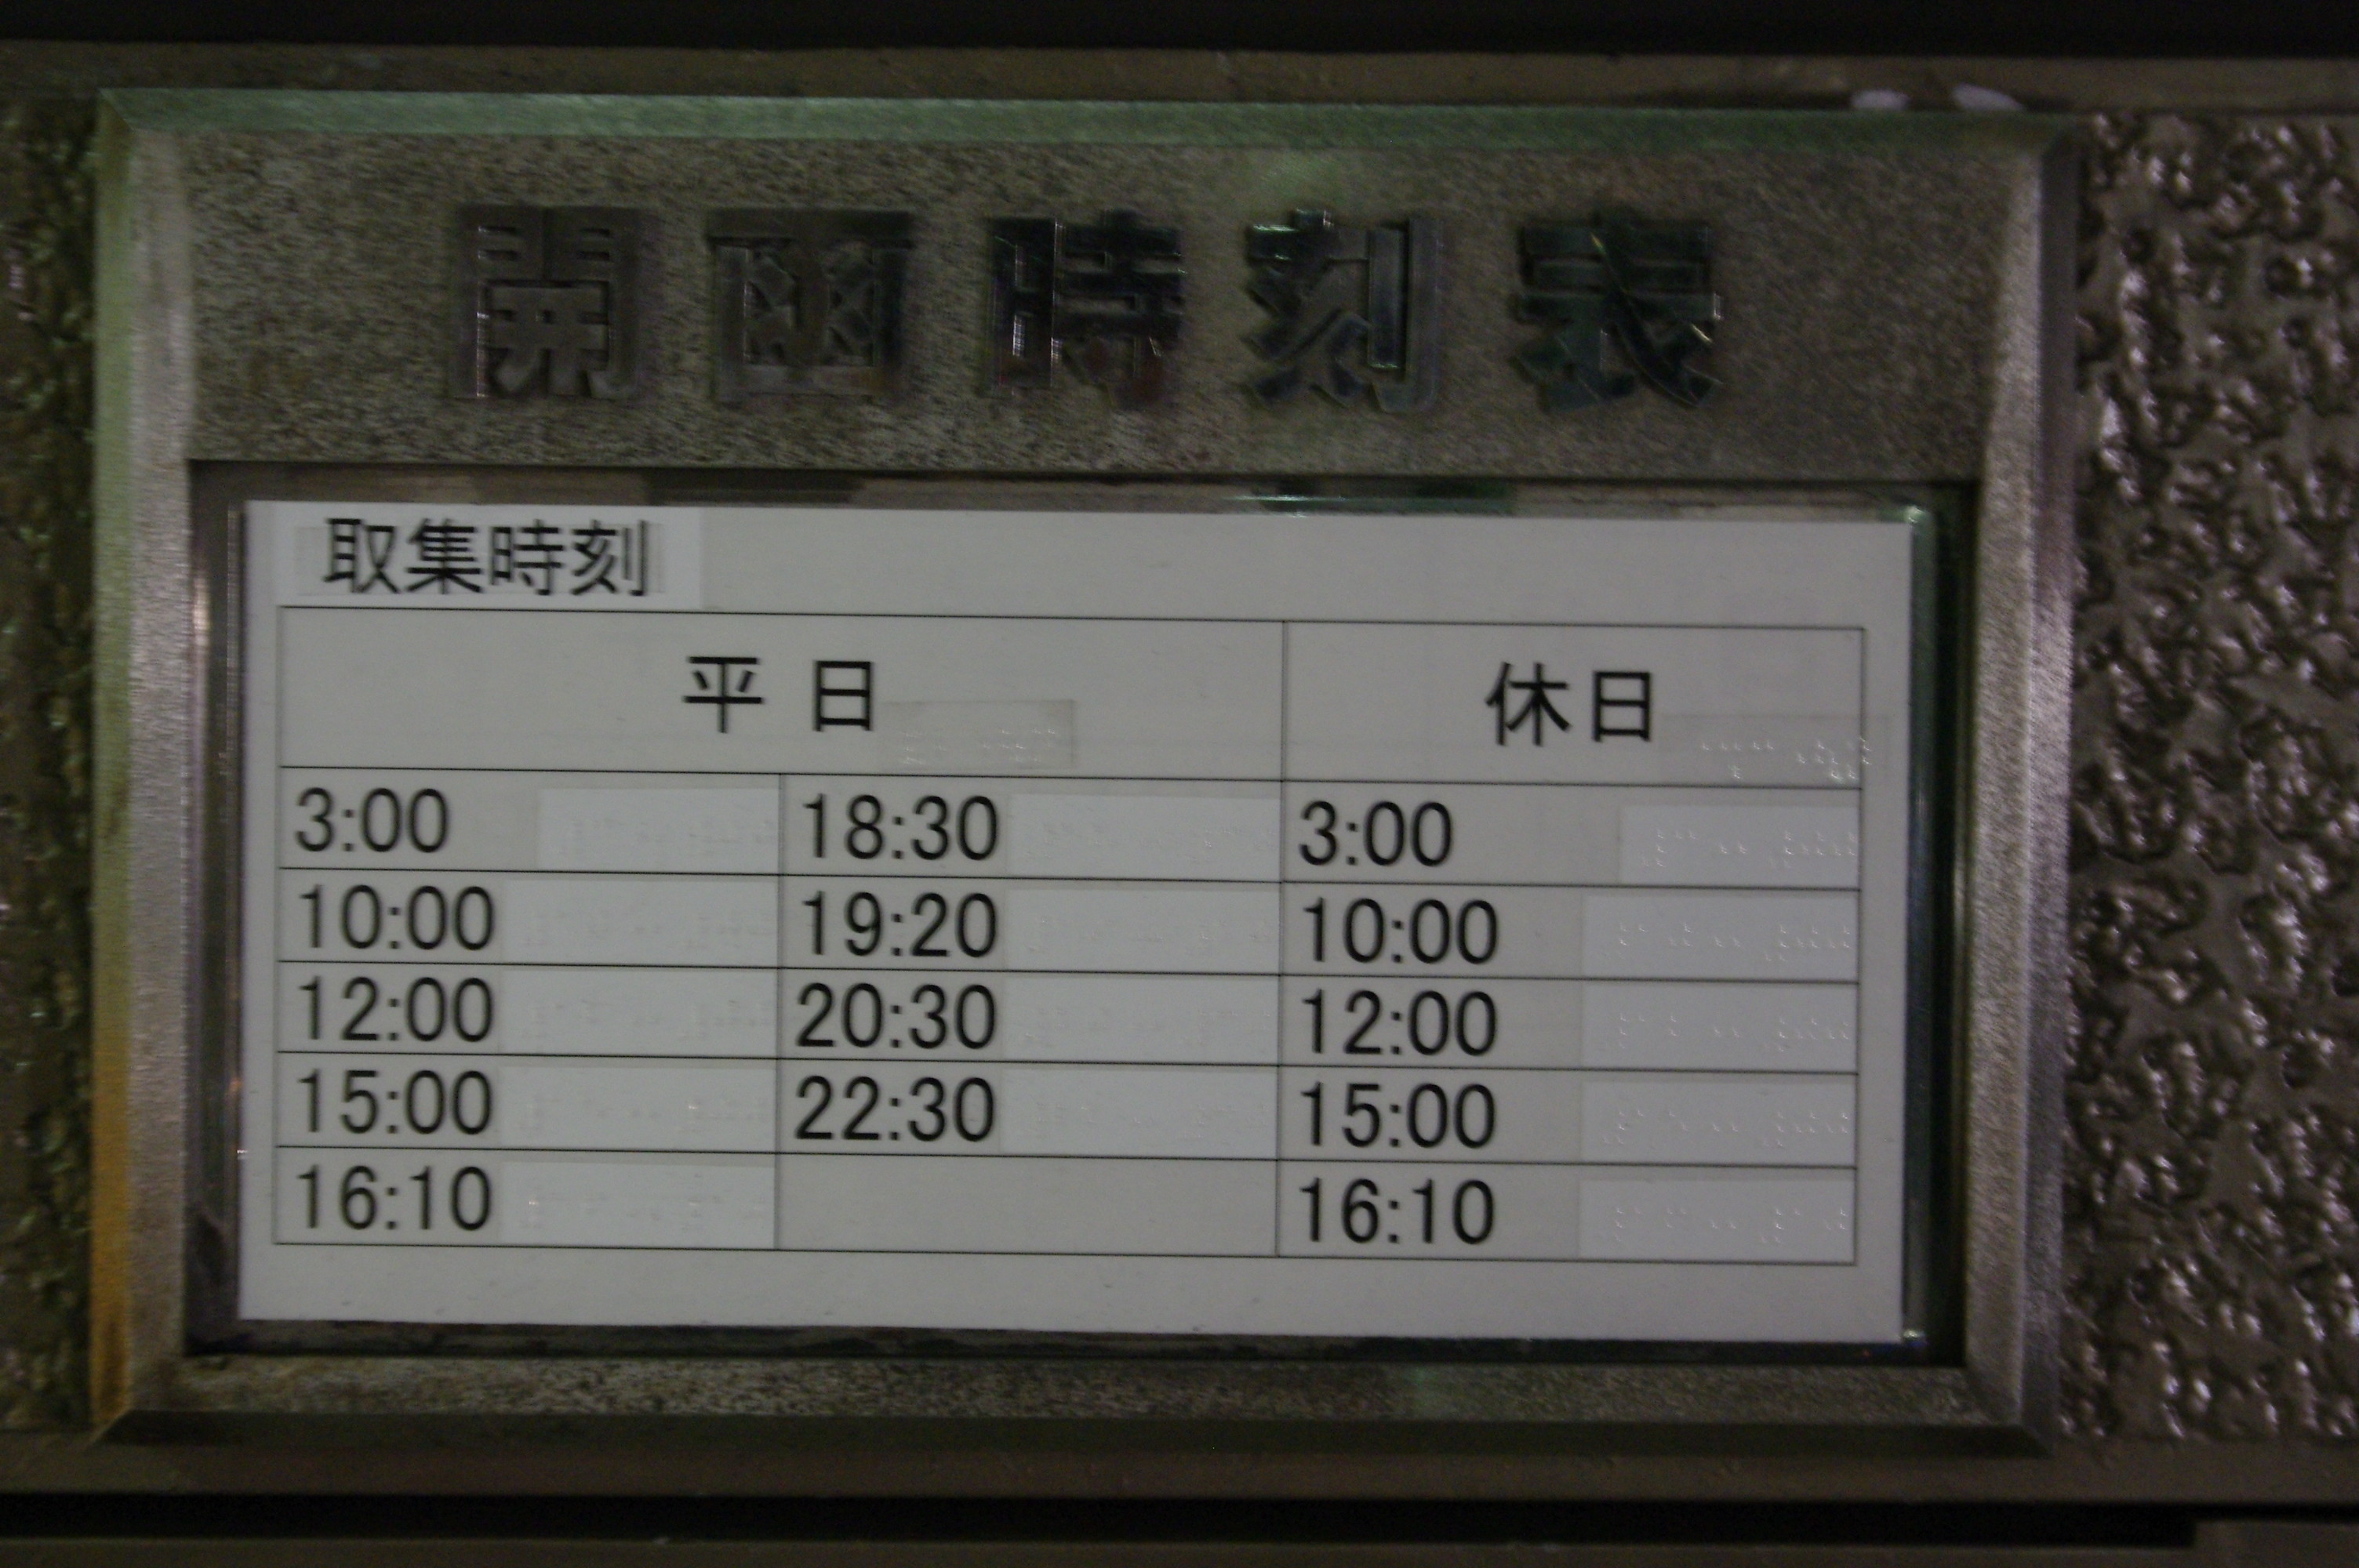 東京都内通常郵便結束表 郵便ダイヤ どぶ組の差立便